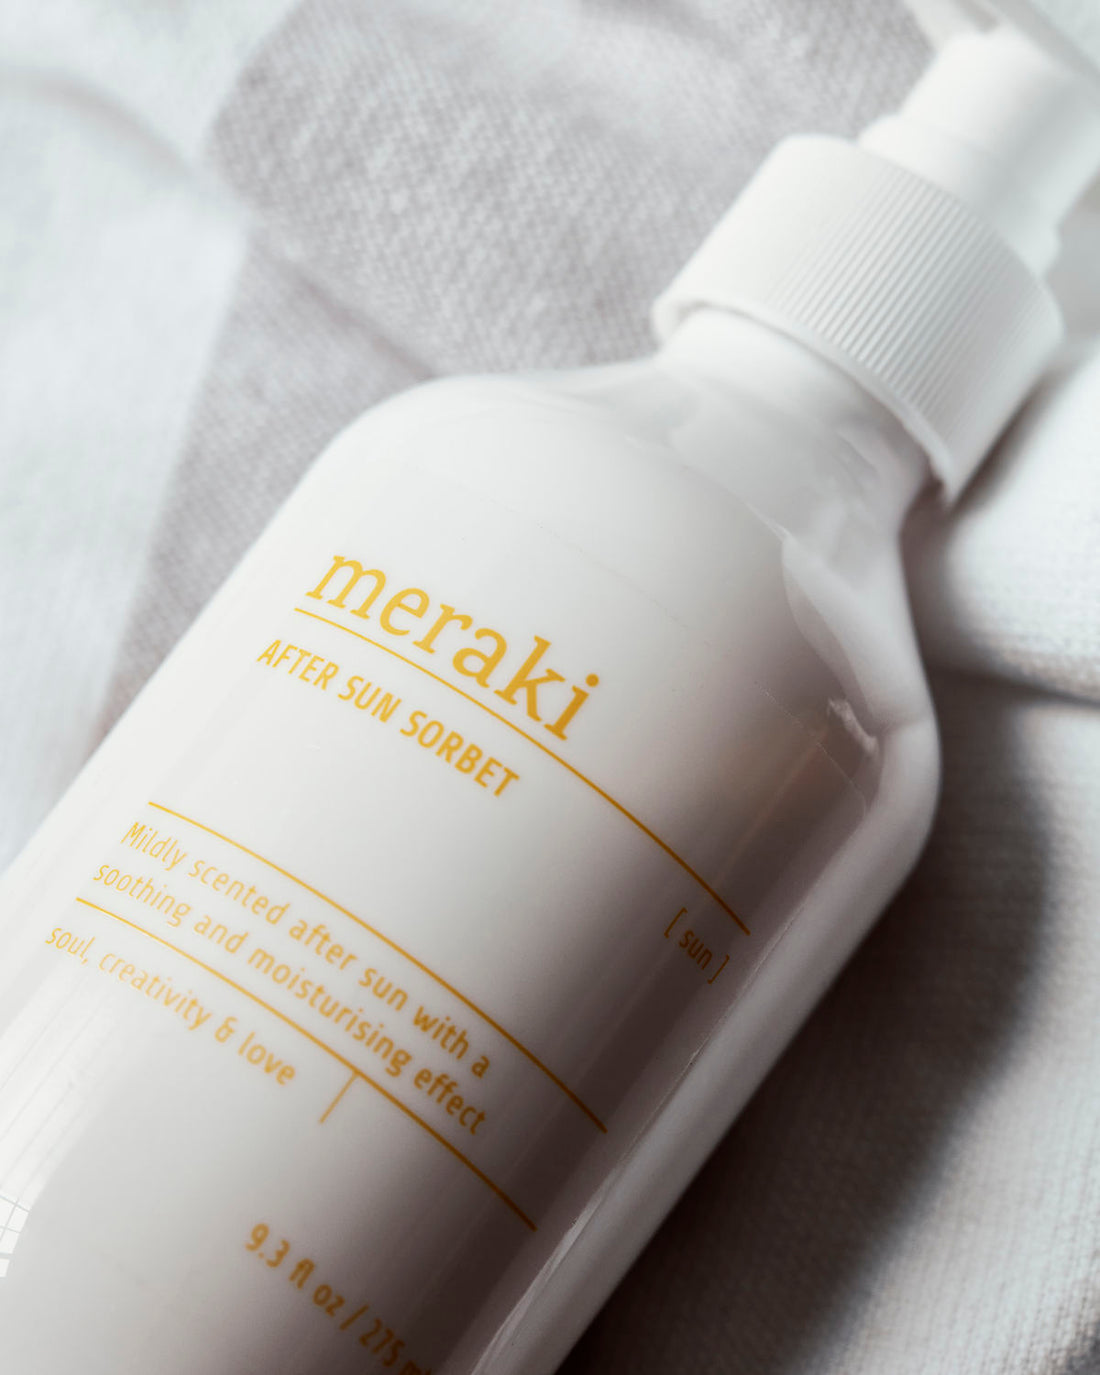 Meraki - After sun sorbet, mildly scented